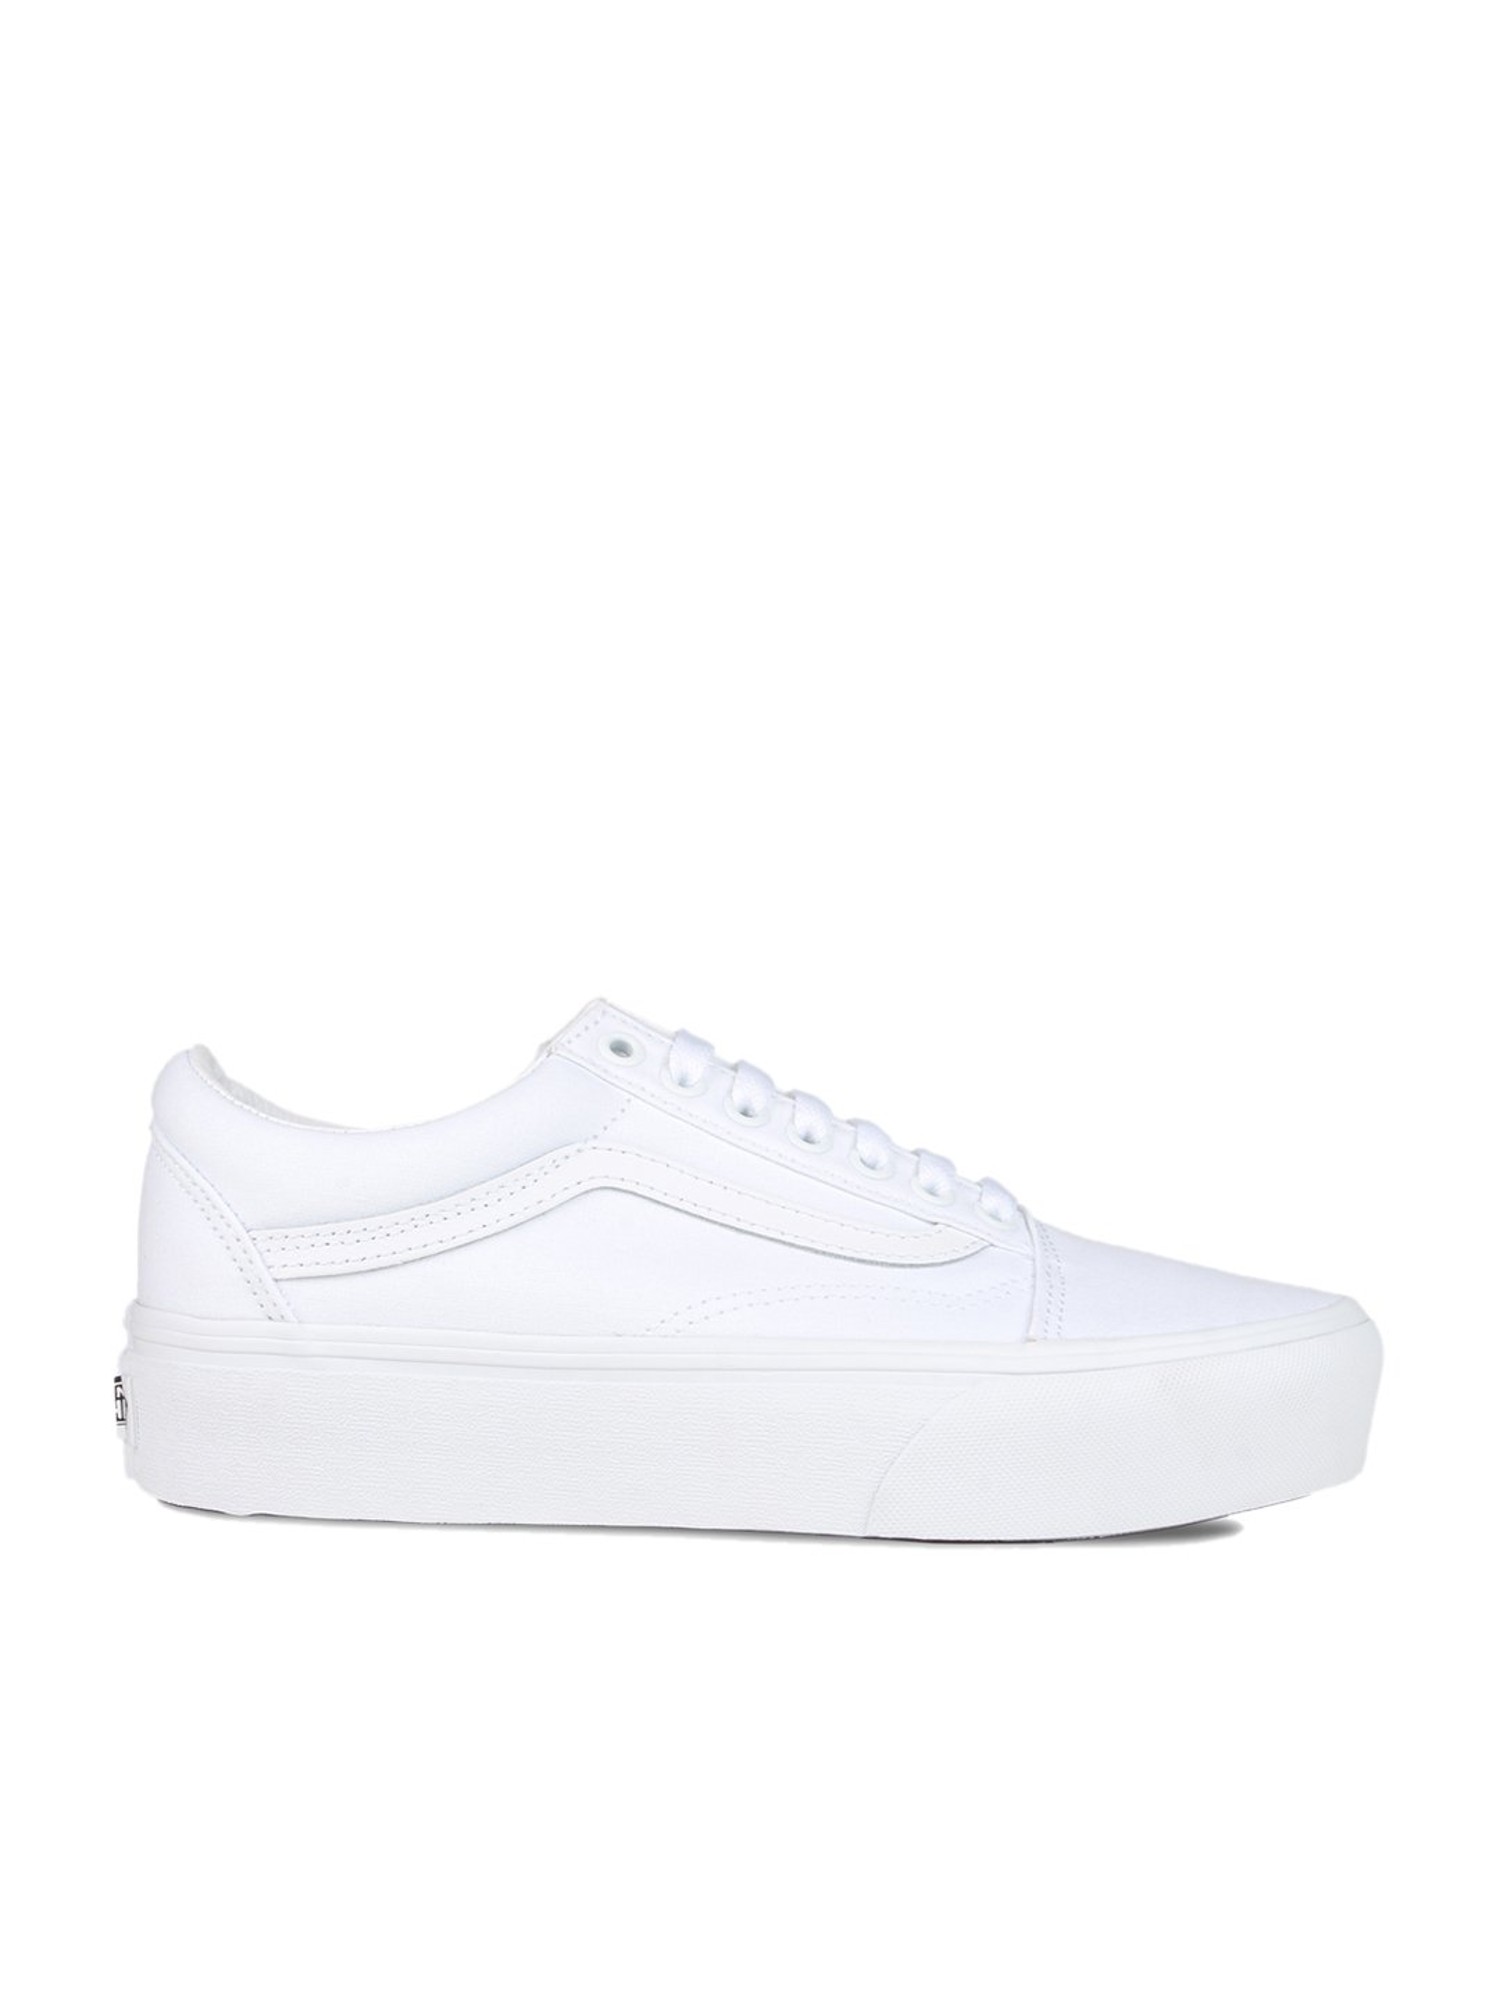 VANS Classic Slip-On True White Shoes - WHITE | Tillys